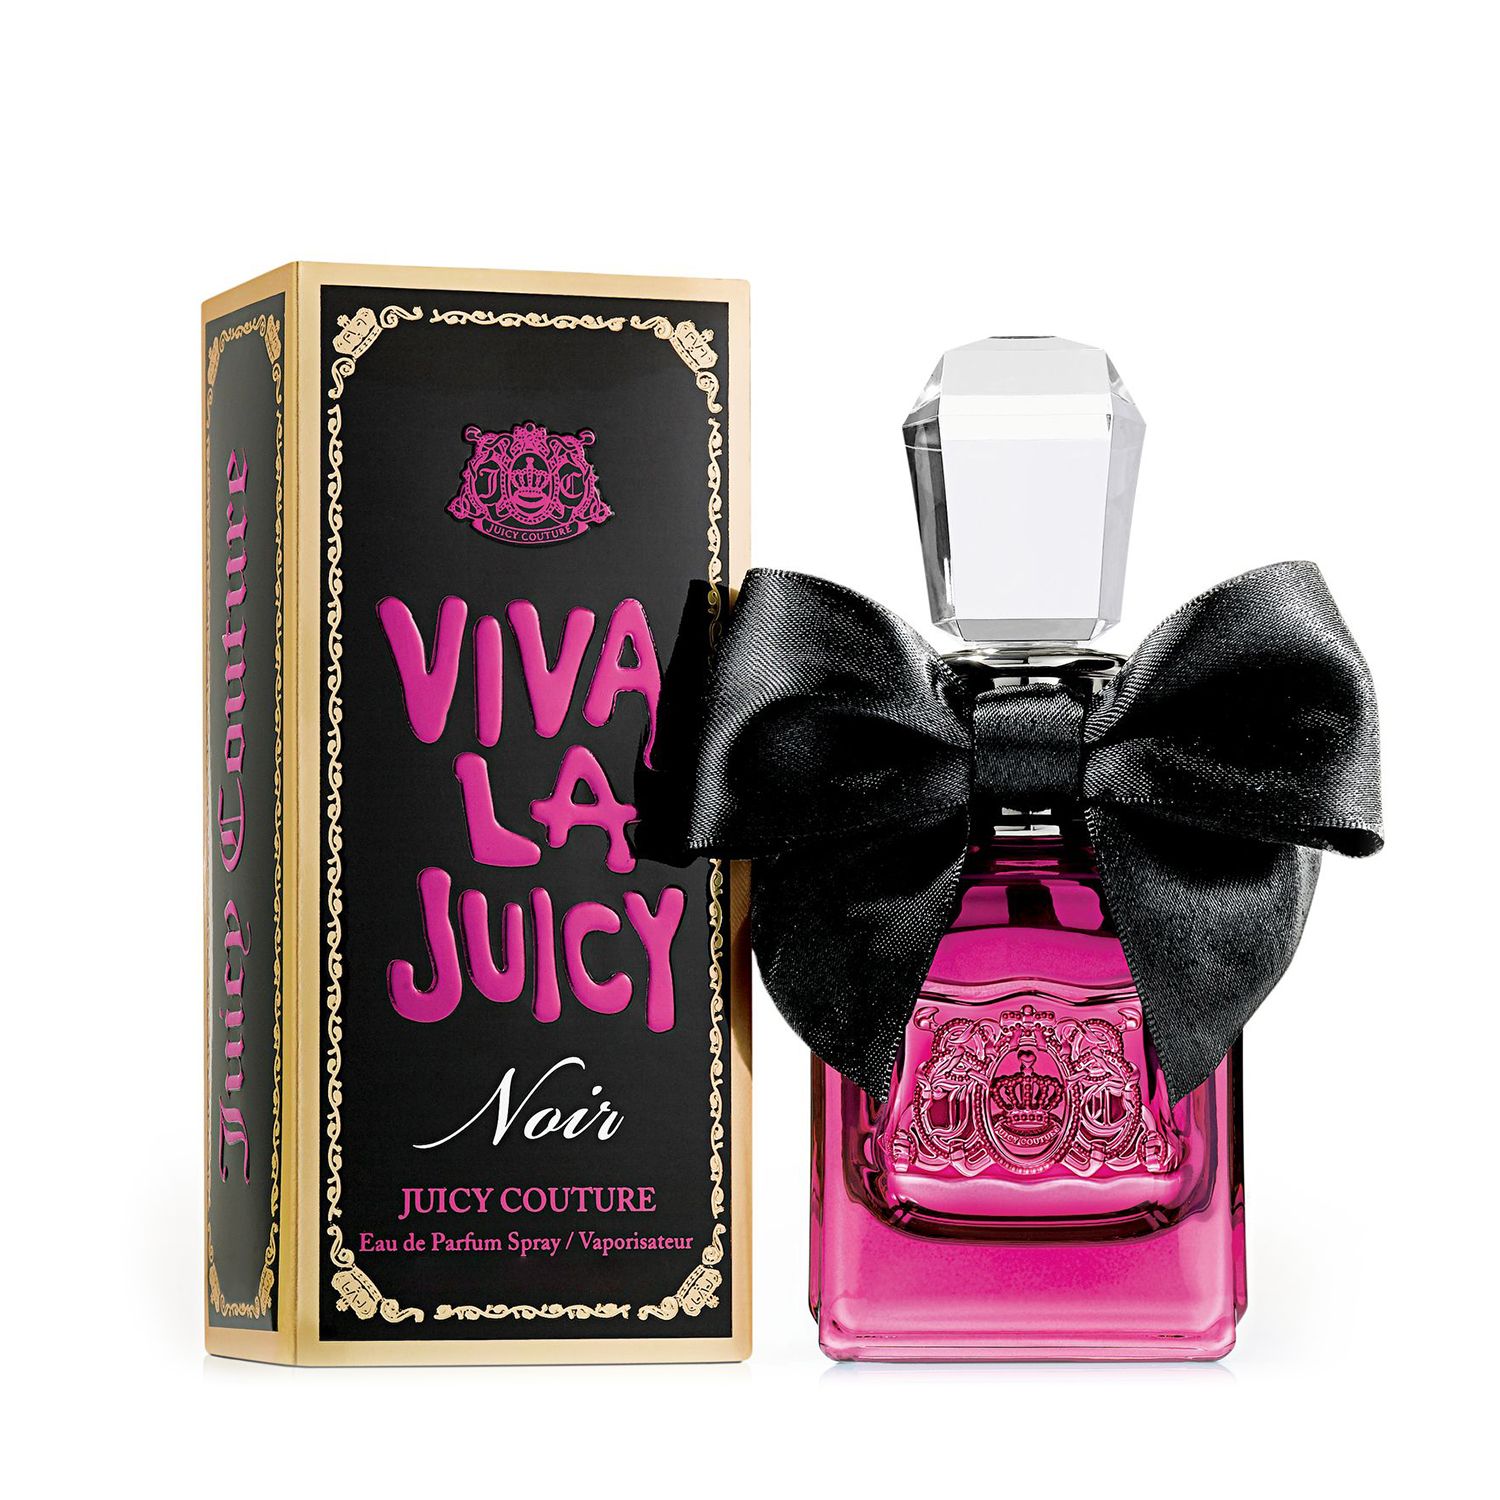 Juicy Couture Viva La Juicy Noir - Eau 